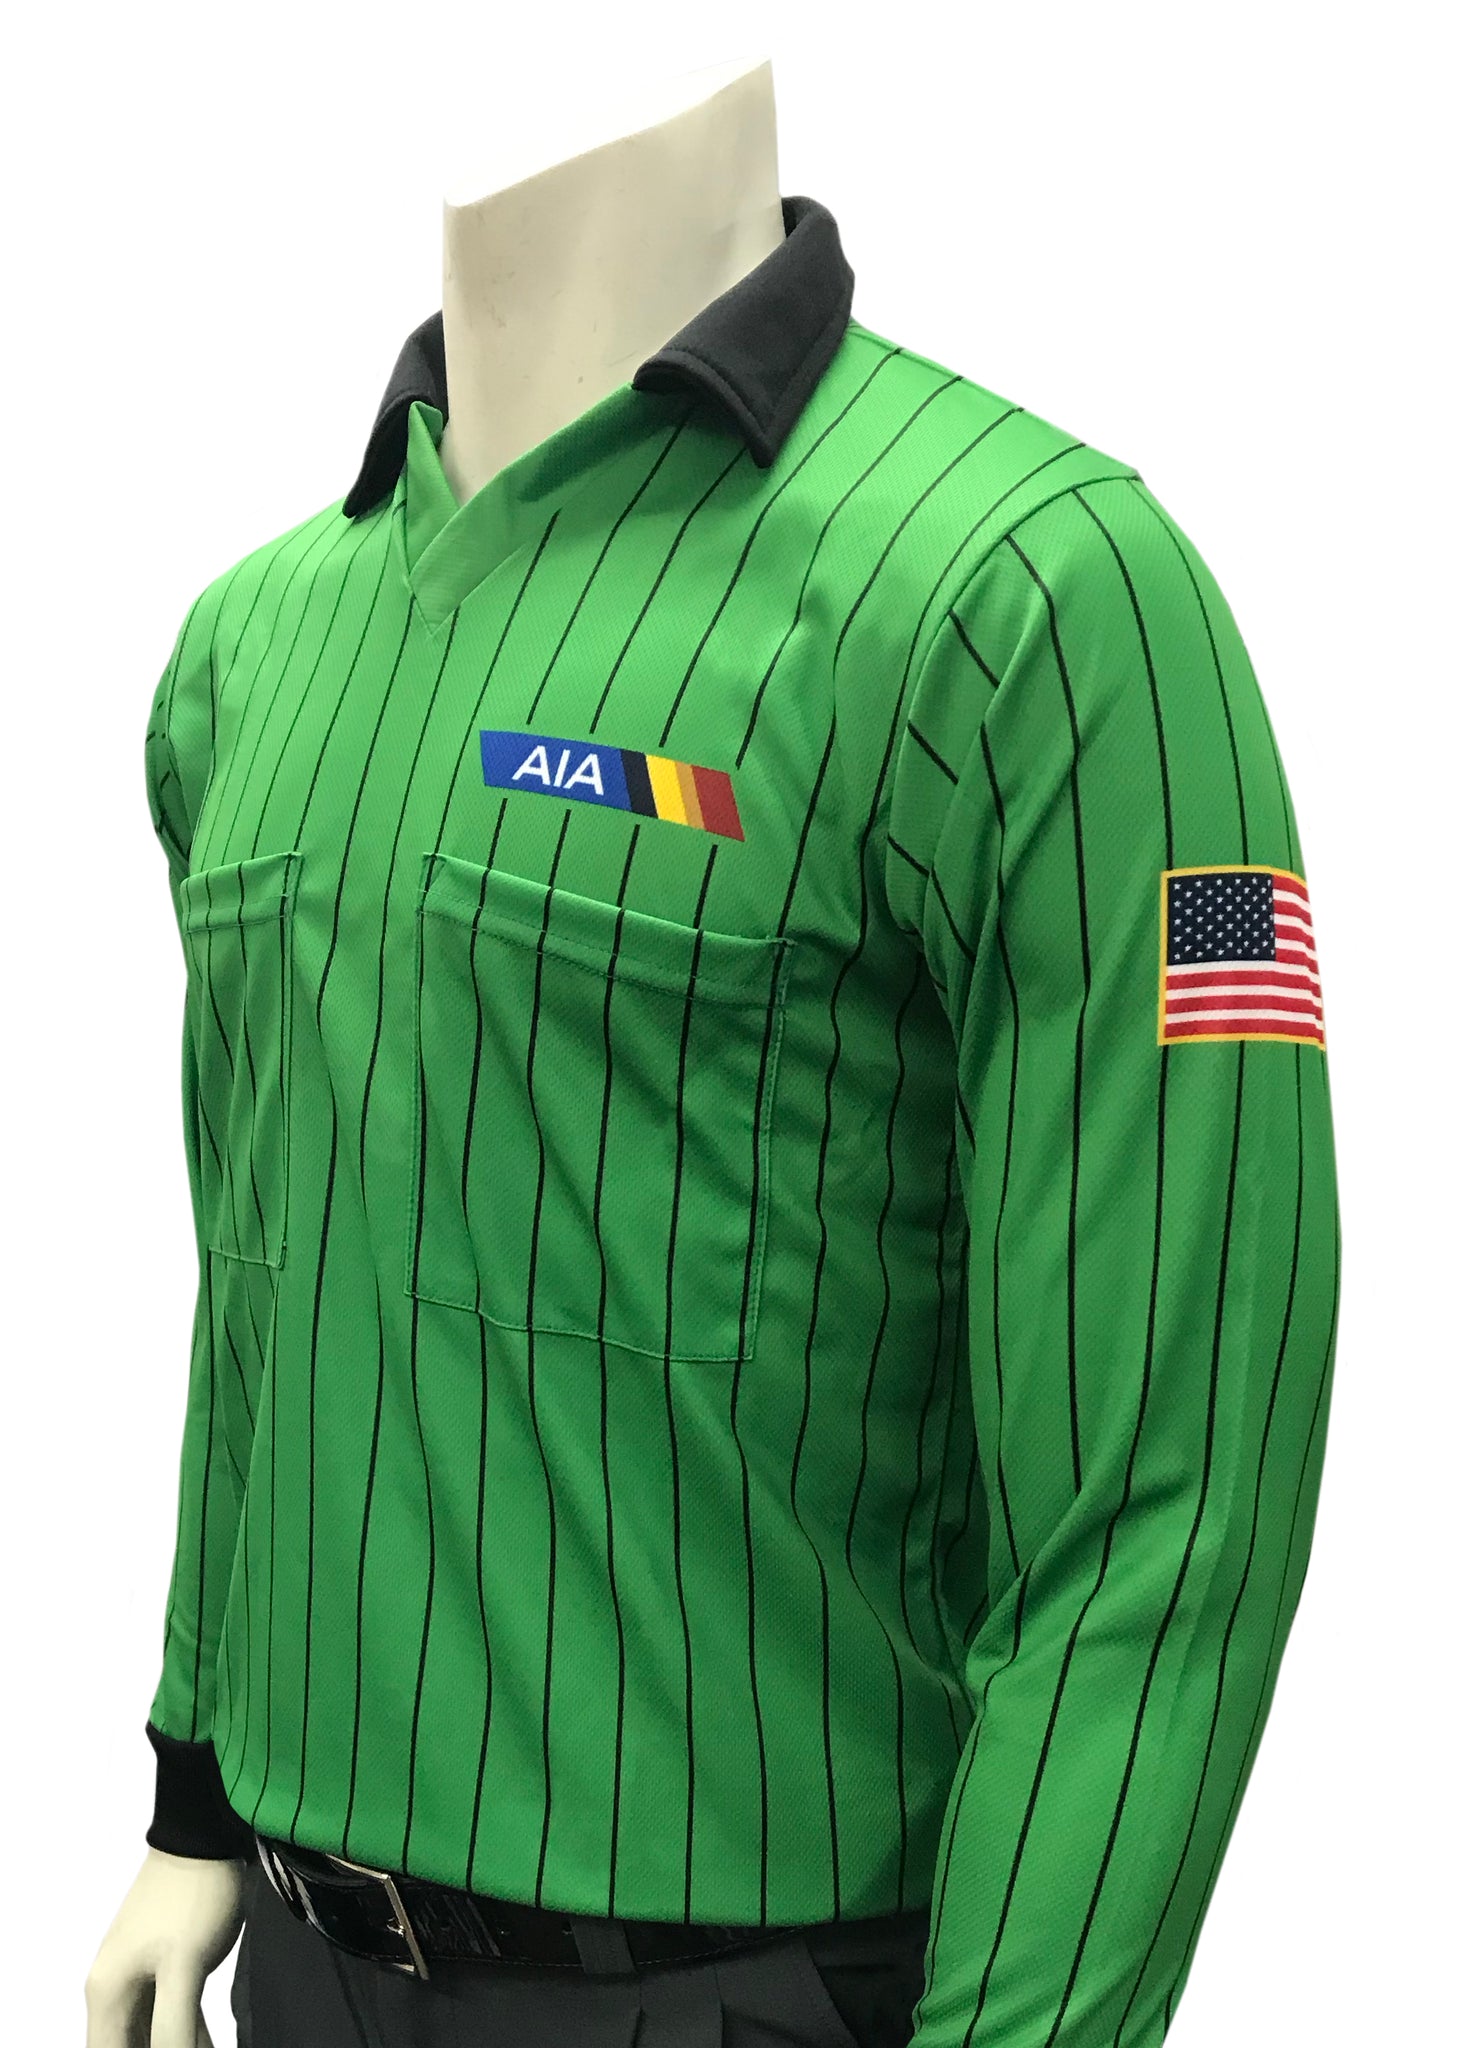 USA901AZ - Smitty "Made in USA" - Arizona Dye Sub Soccer Long Sleeve Shirt